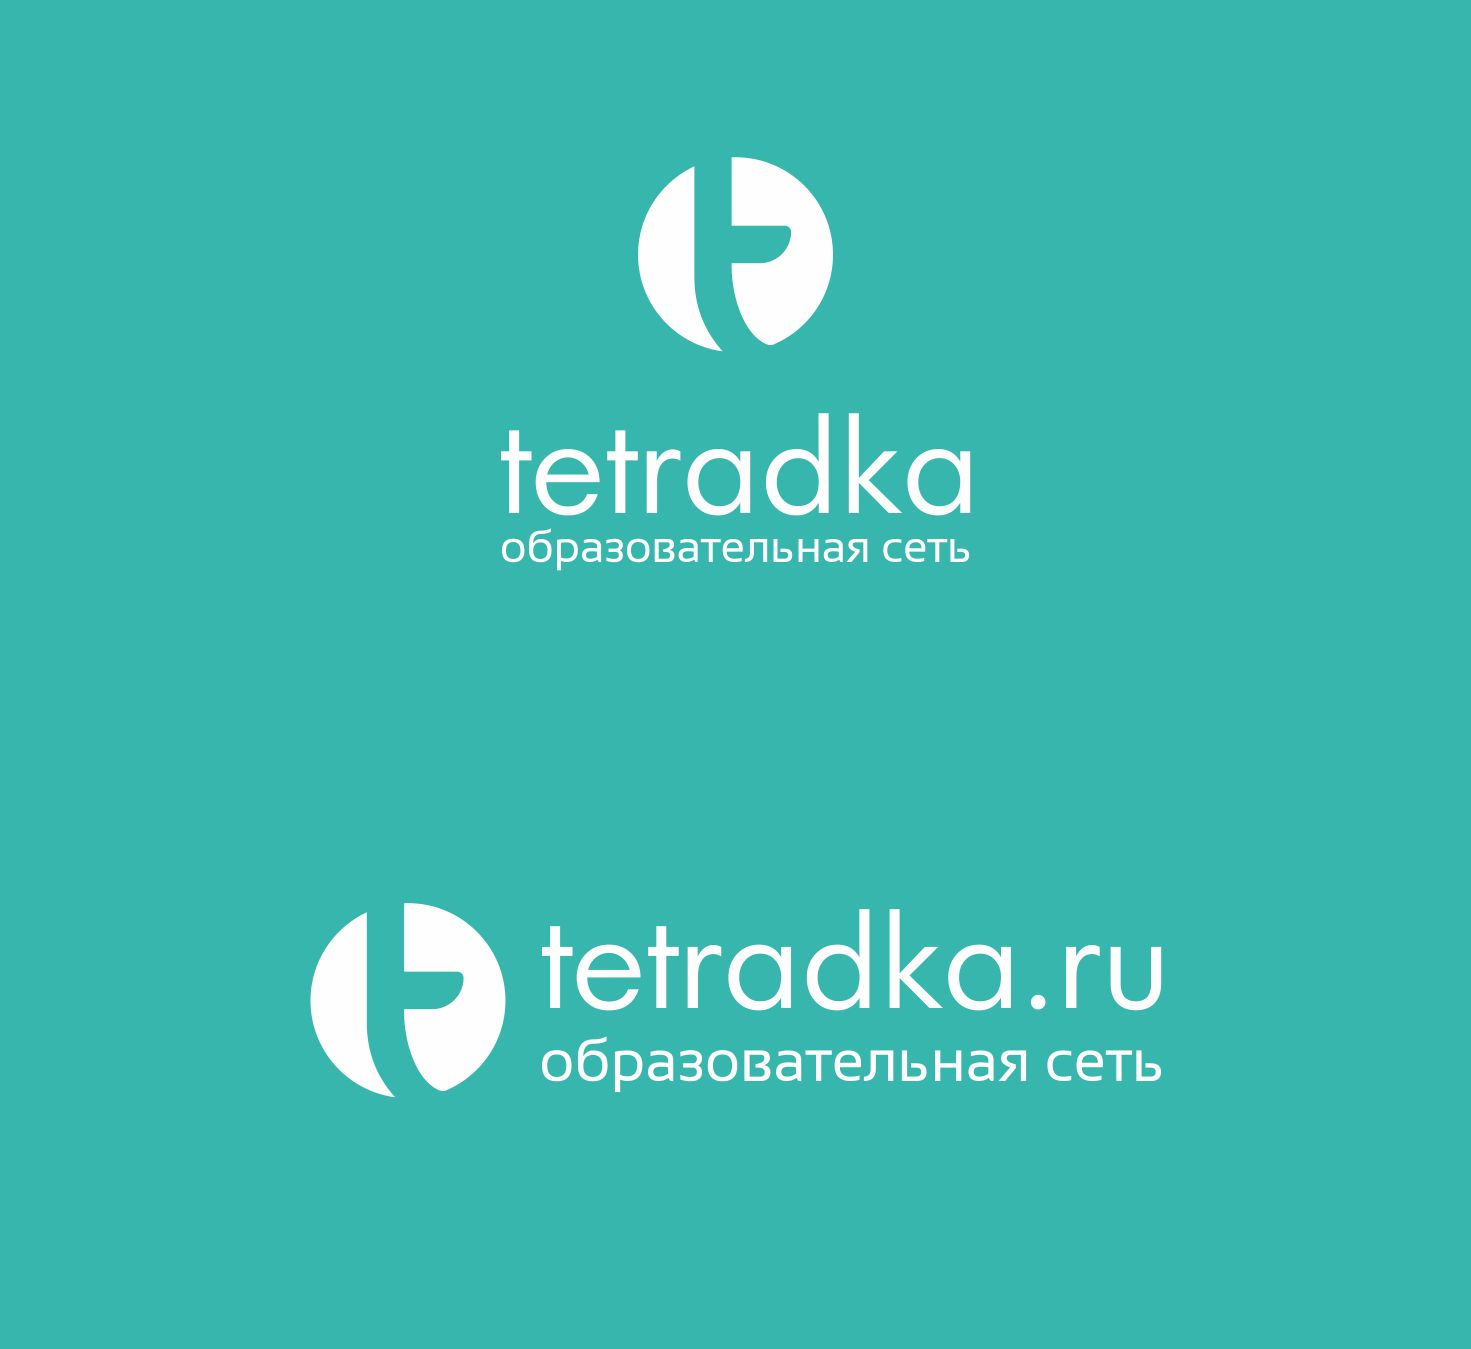 Логотип для образовательной сети tetradka.ru - дизайнер LianaVeret